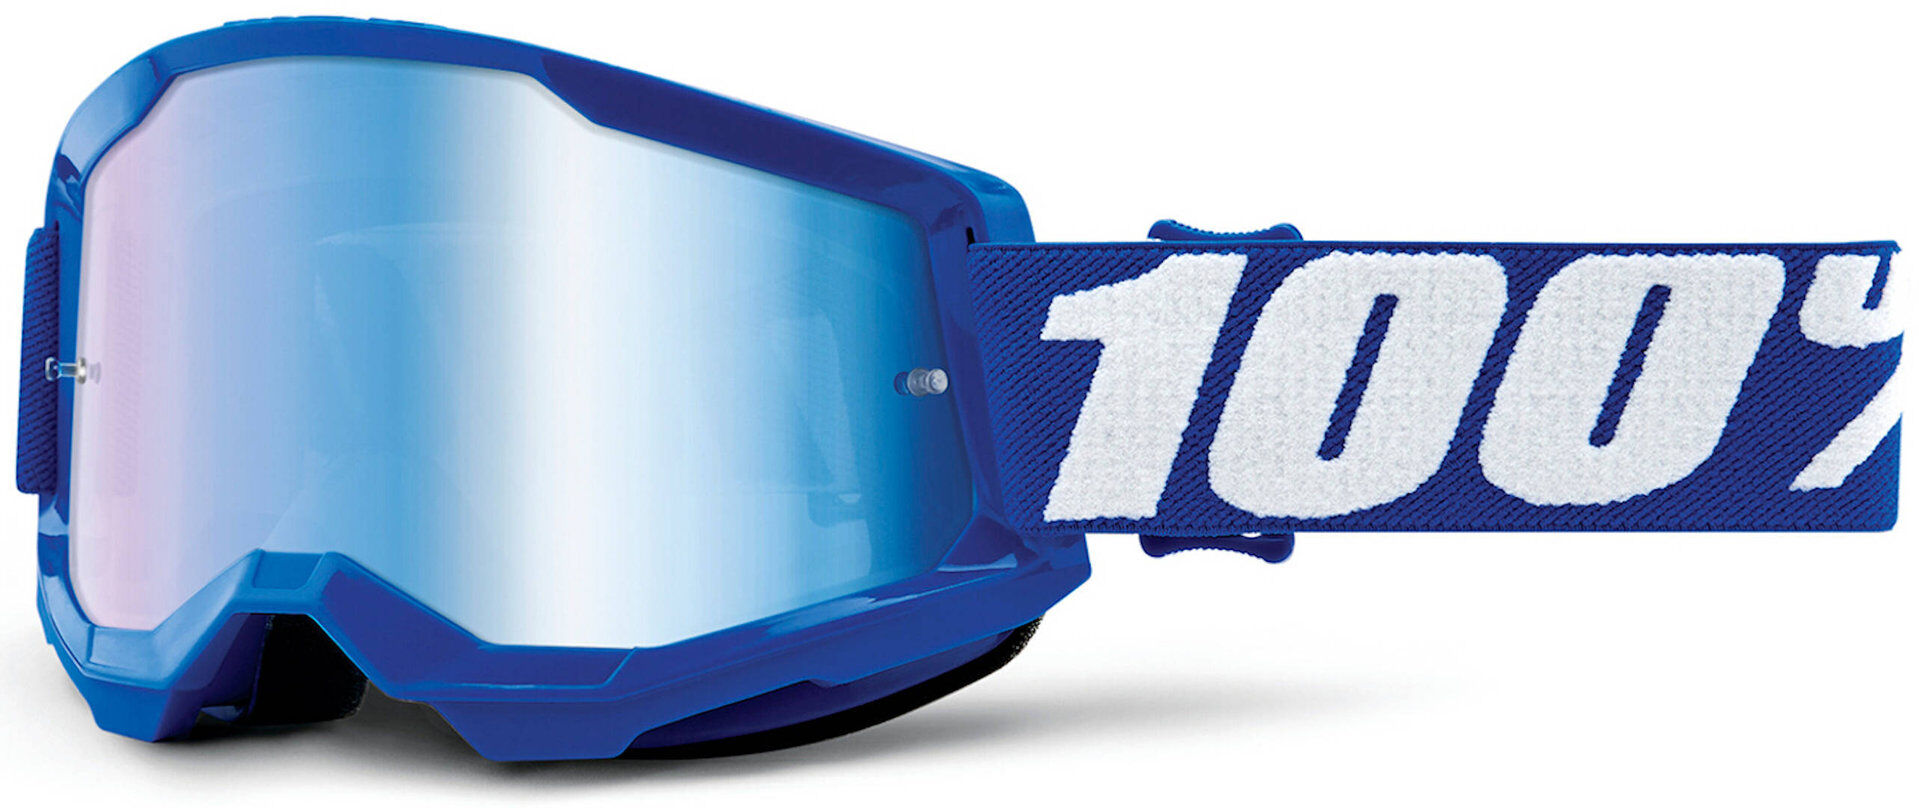 100% Strata 2 Gafas de motocross - Blanco Azul (un tamaño)